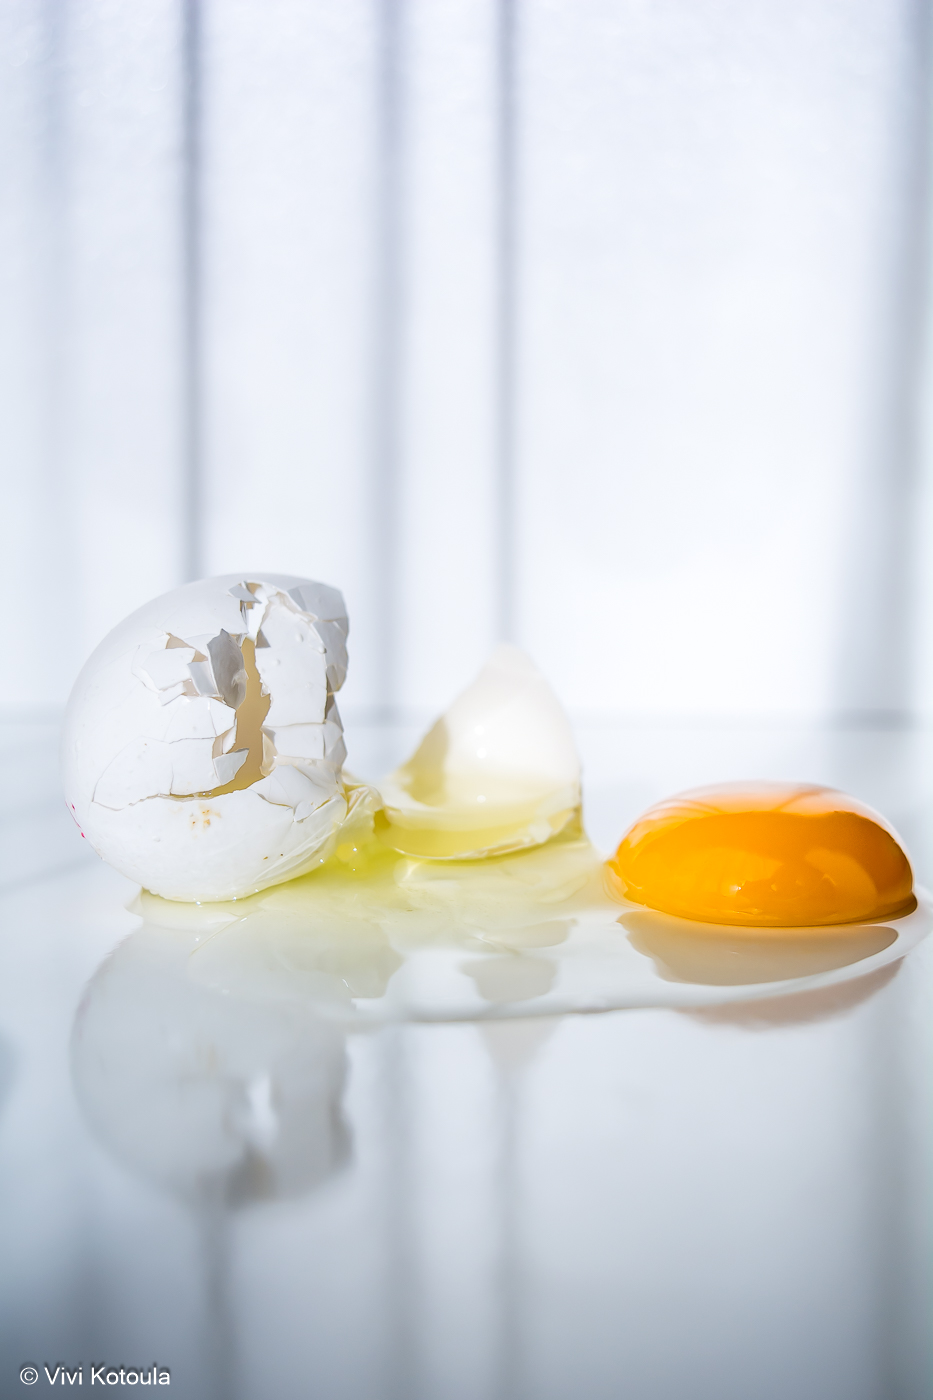 Μια φωτοϊστορία με αβγά, που το ένα δραπετεύει, κάποια άλλα ακολουθούν, όμως ποια θα είναι η κατάληξη; - Vivi Kotoula